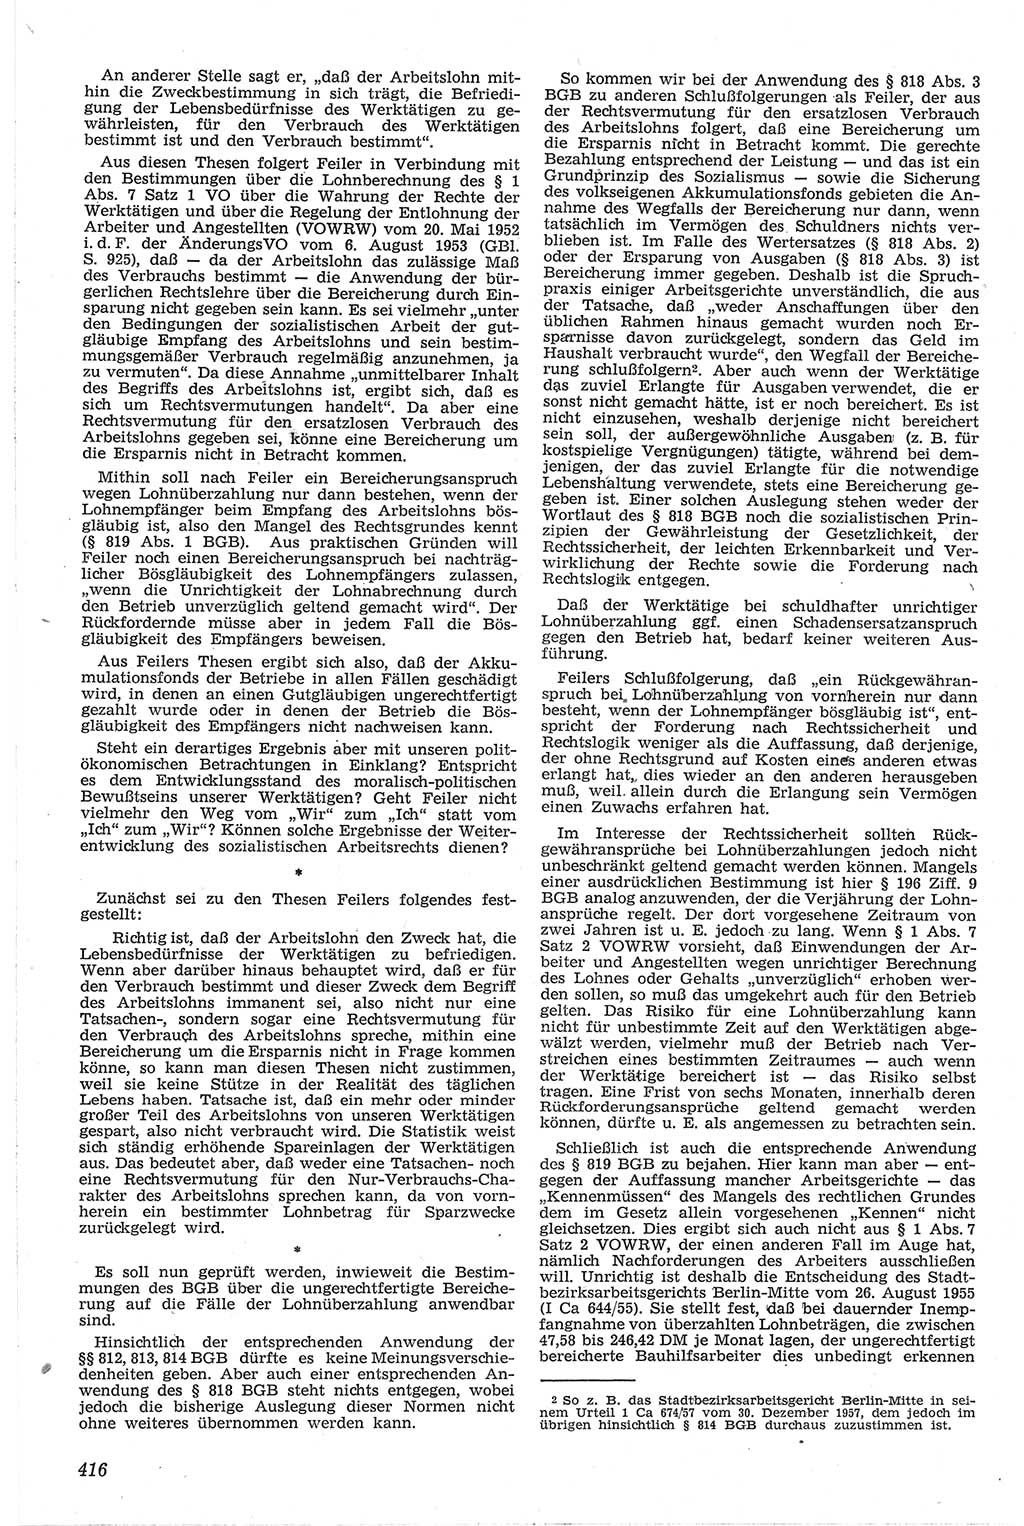 Neue Justiz (NJ), Zeitschrift für Recht und Rechtswissenschaft [Deutsche Demokratische Republik (DDR)], 13. Jahrgang 1959, Seite 416 (NJ DDR 1959, S. 416)